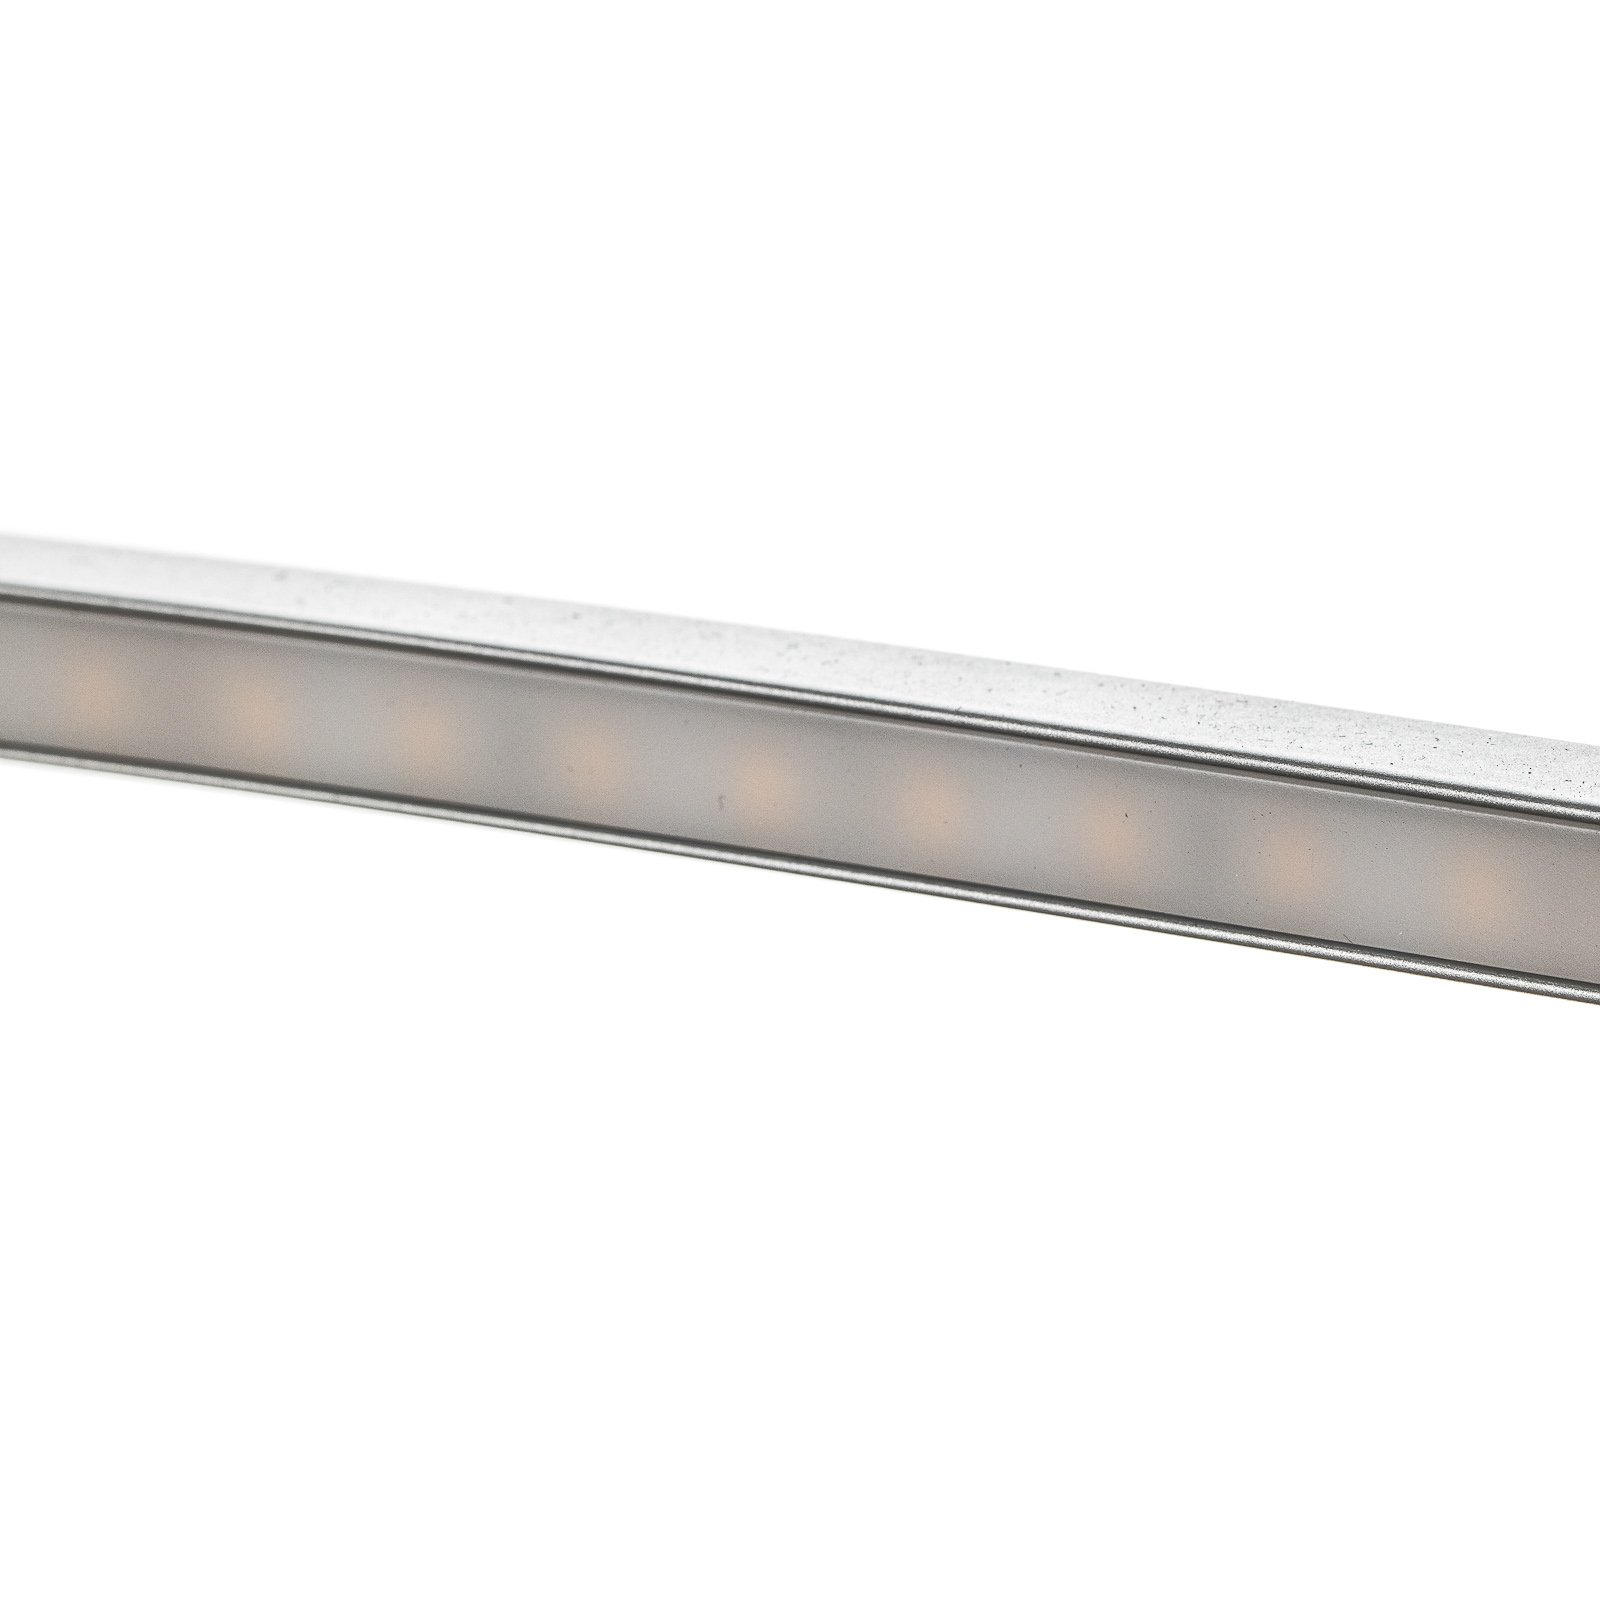 Ovale LED hanglamp Flair, aluminium